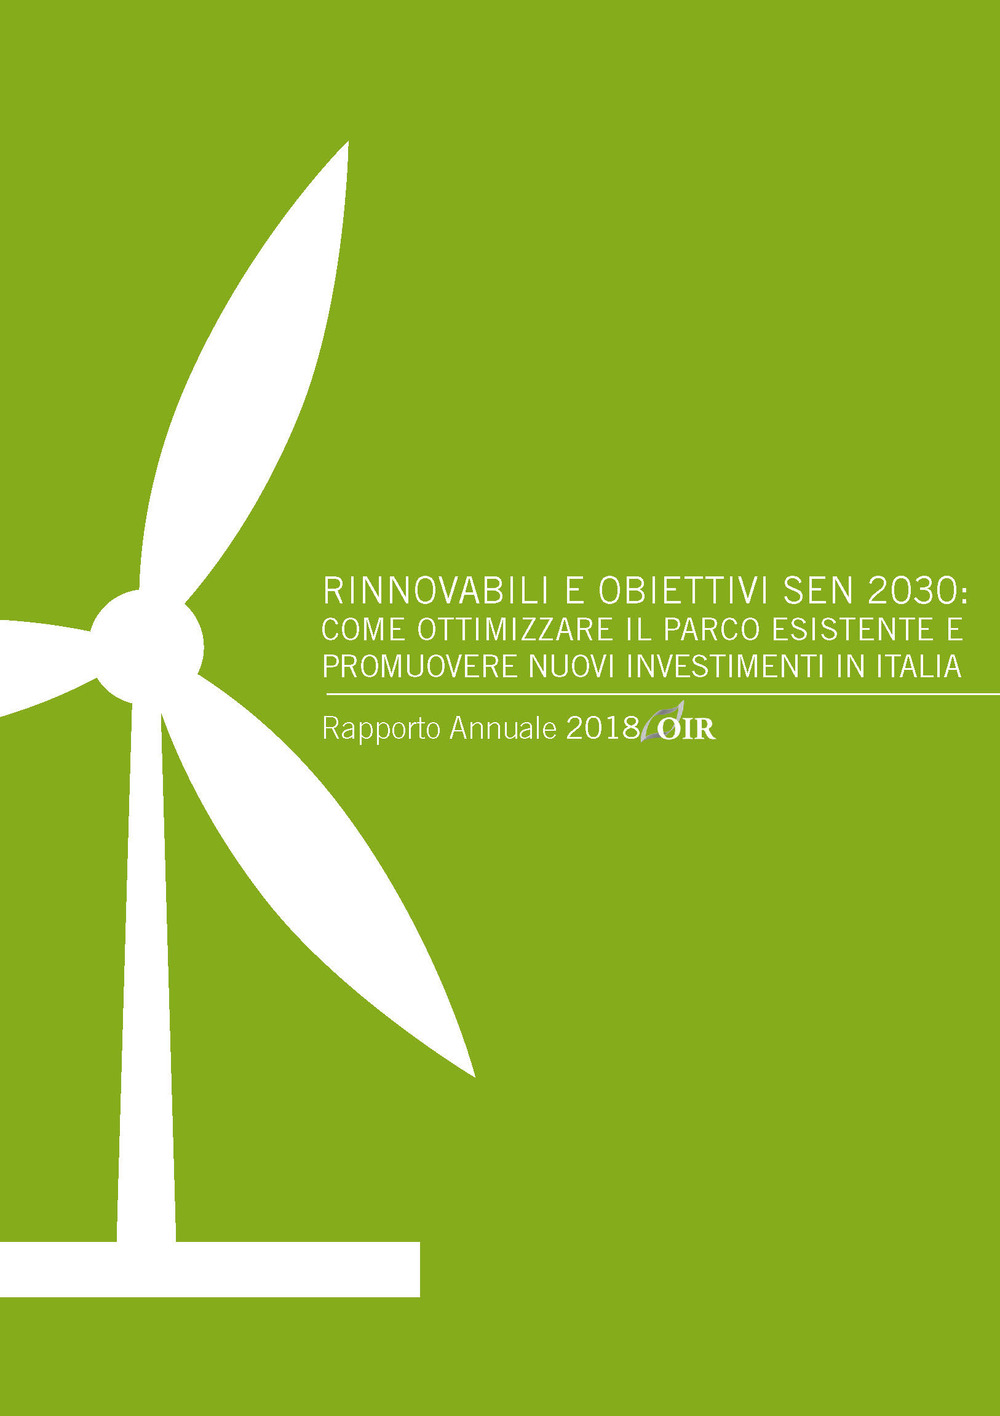 Rinnovabili e obiettivi SEN 2030: come ottimizzare il parco esistente e promuovere nuovi investimenti in Italia. Rapporto annuale 2018 OIR